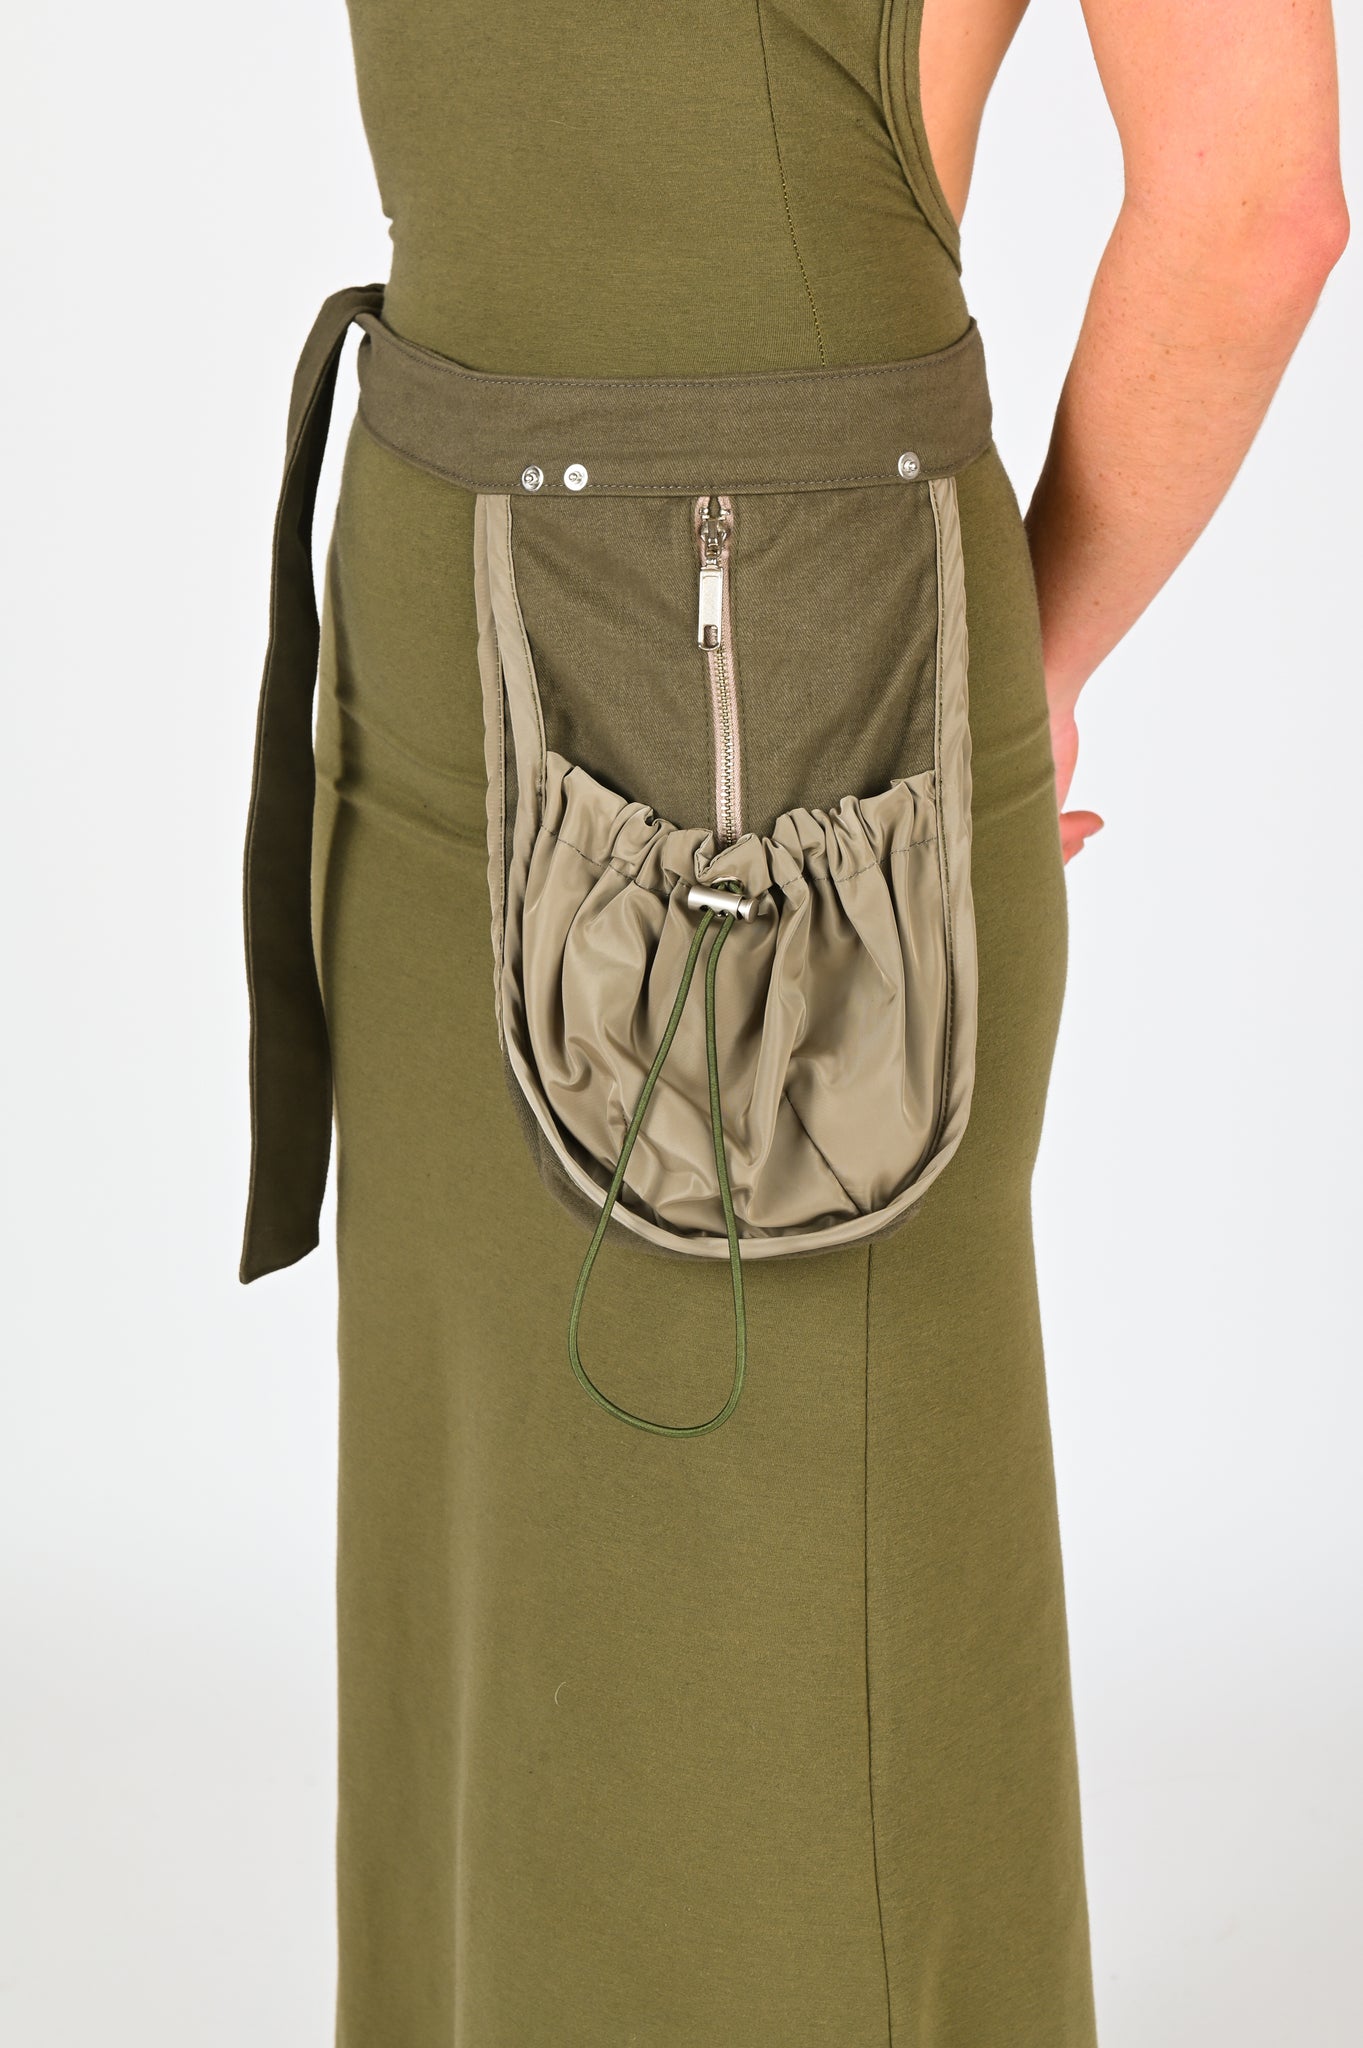 B-R-B 'Pocket' Bag in Khaki